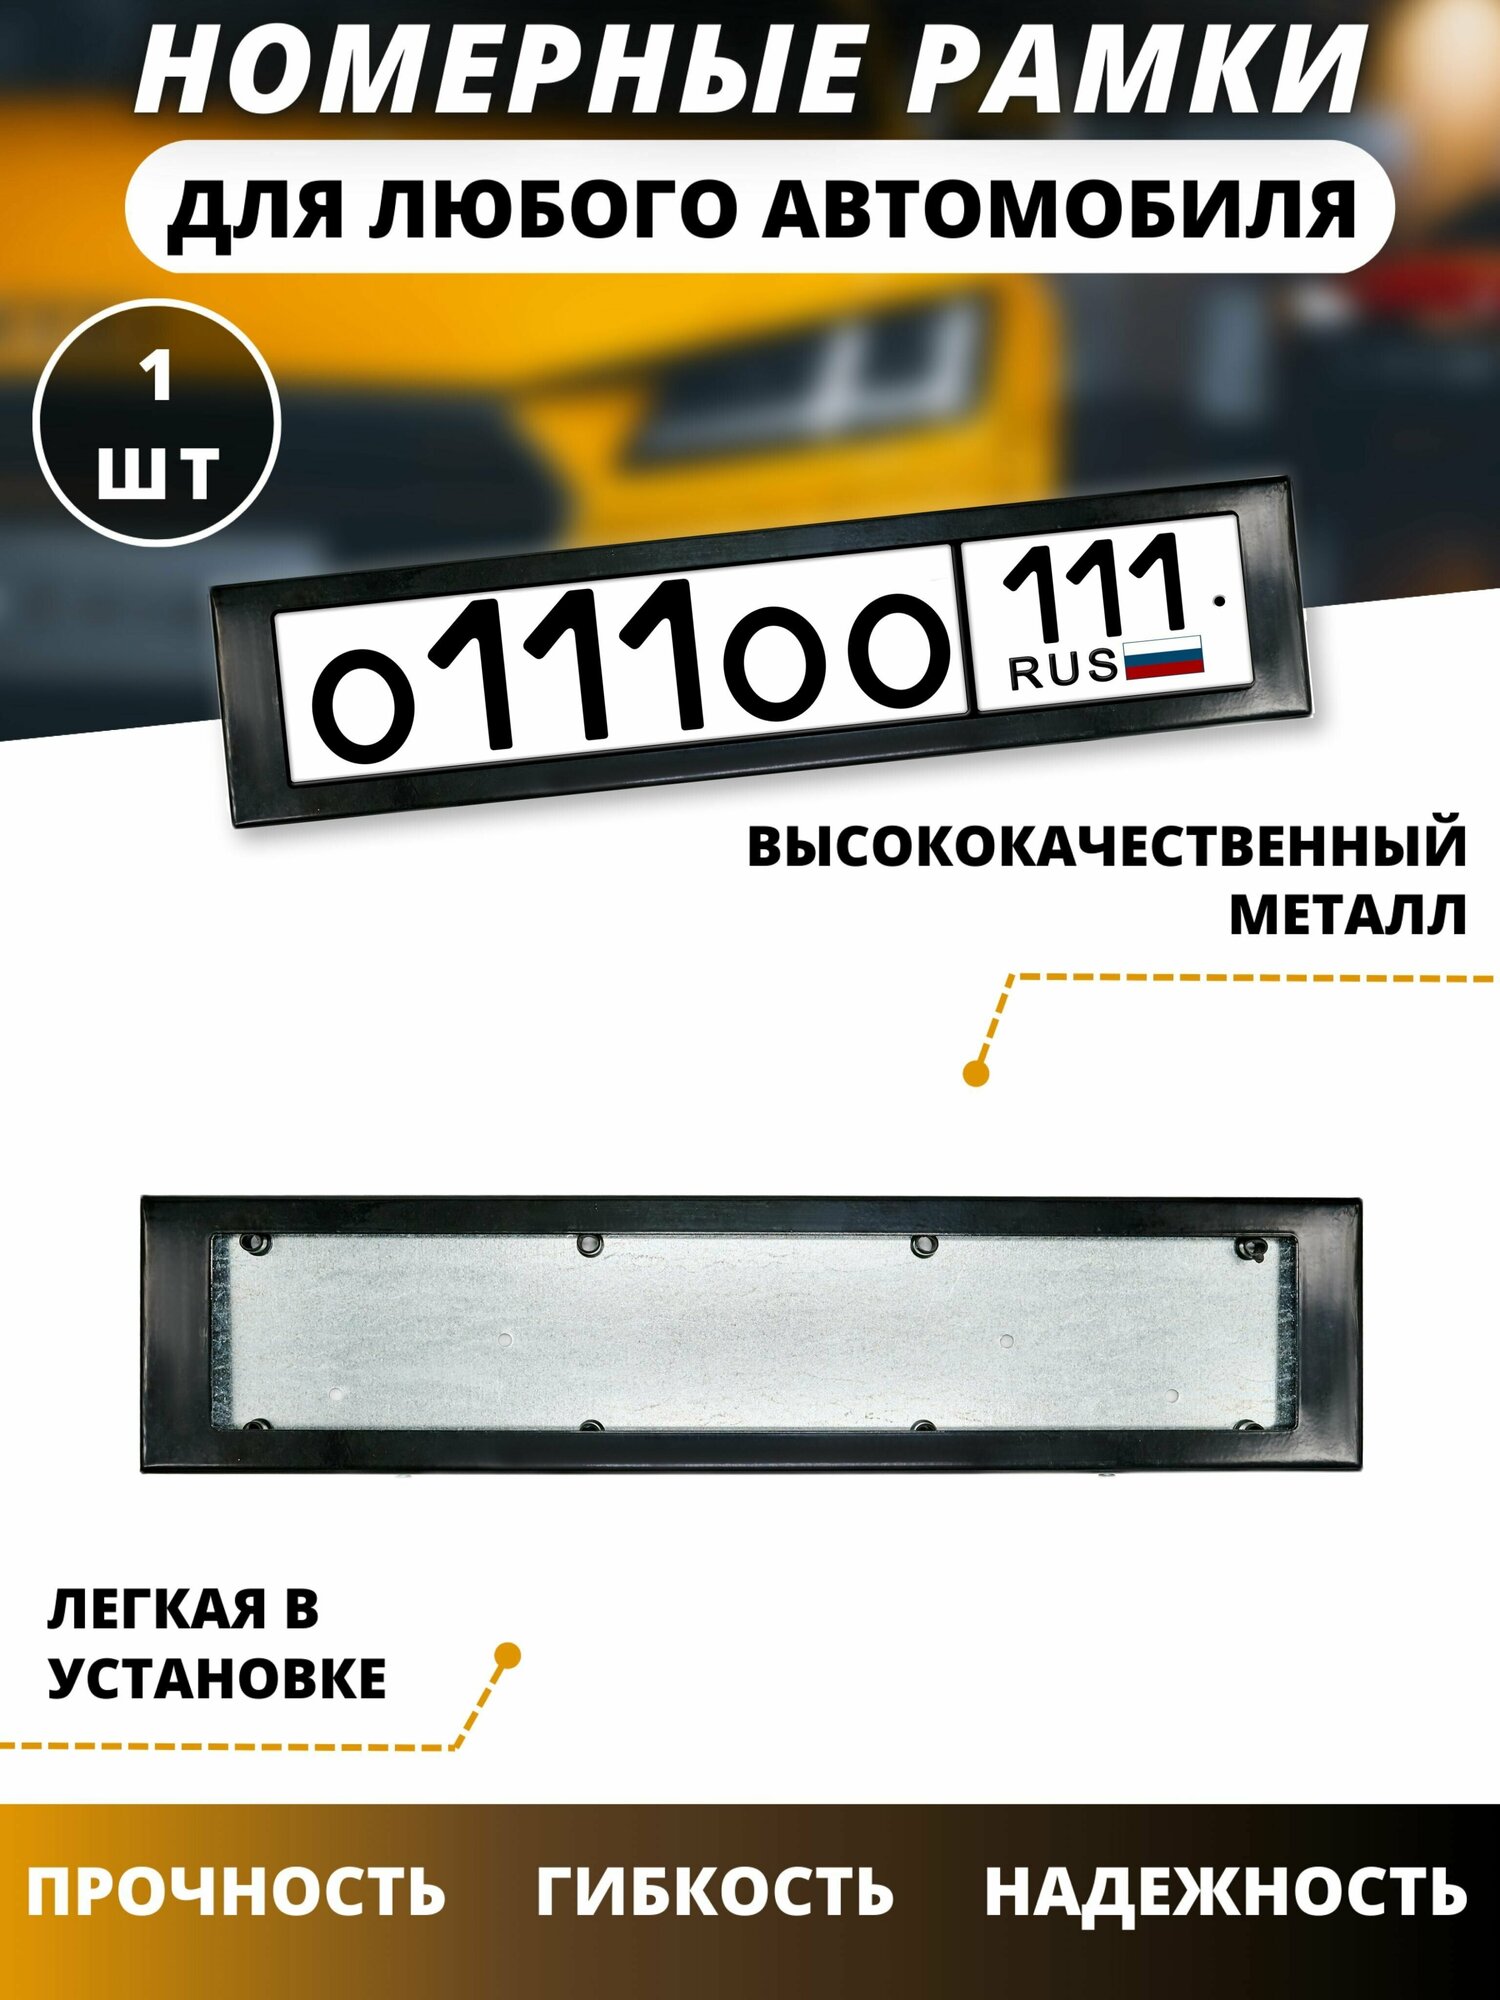 Рамка для номера автомобиля/рамки для номеров авто черная 111